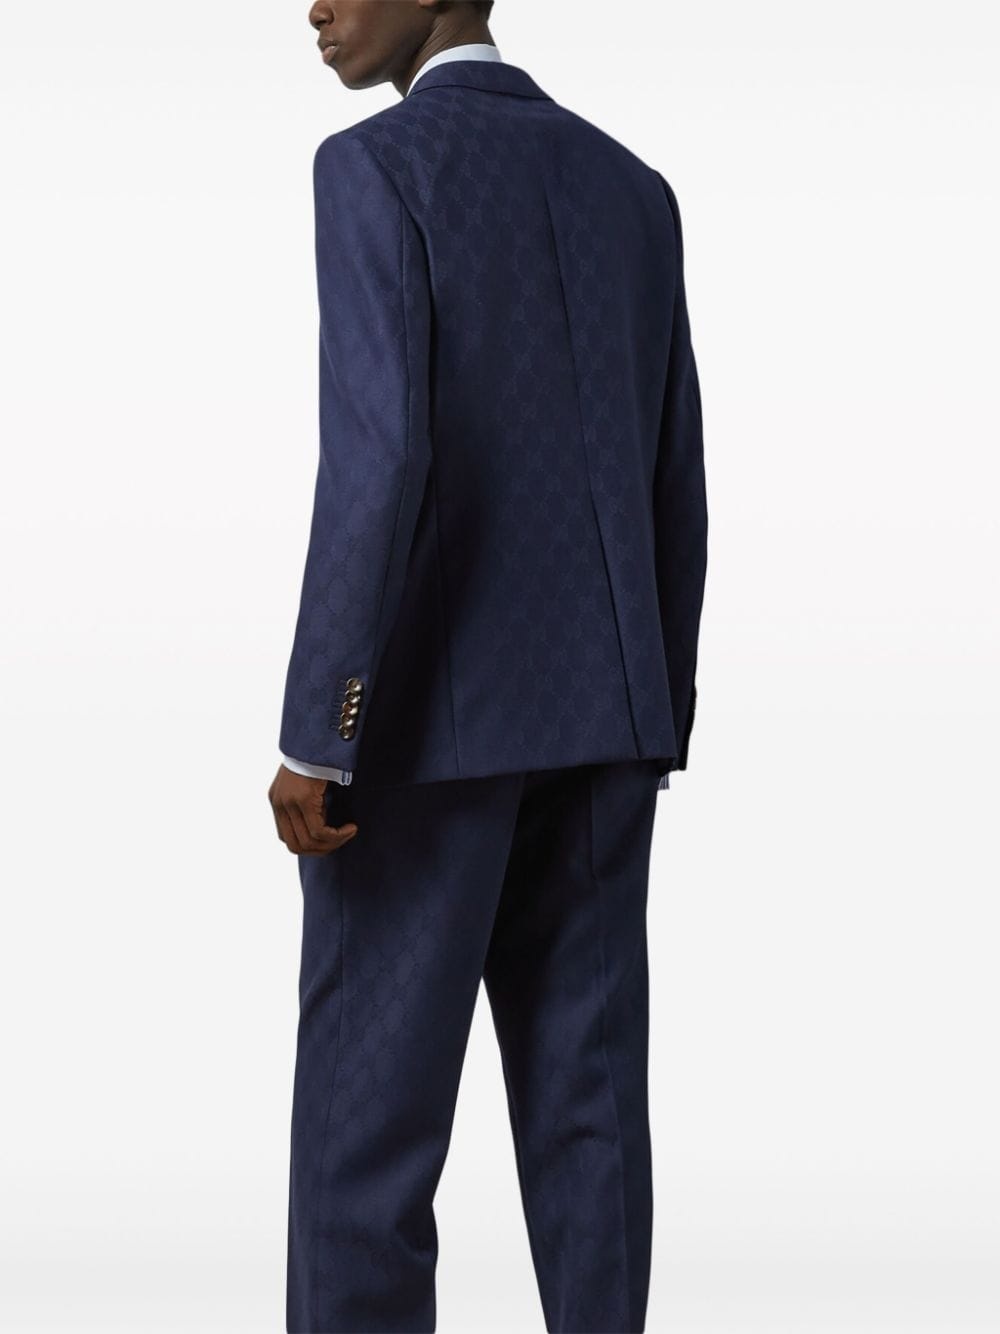 GG Damier-jacquard wool suit - 4